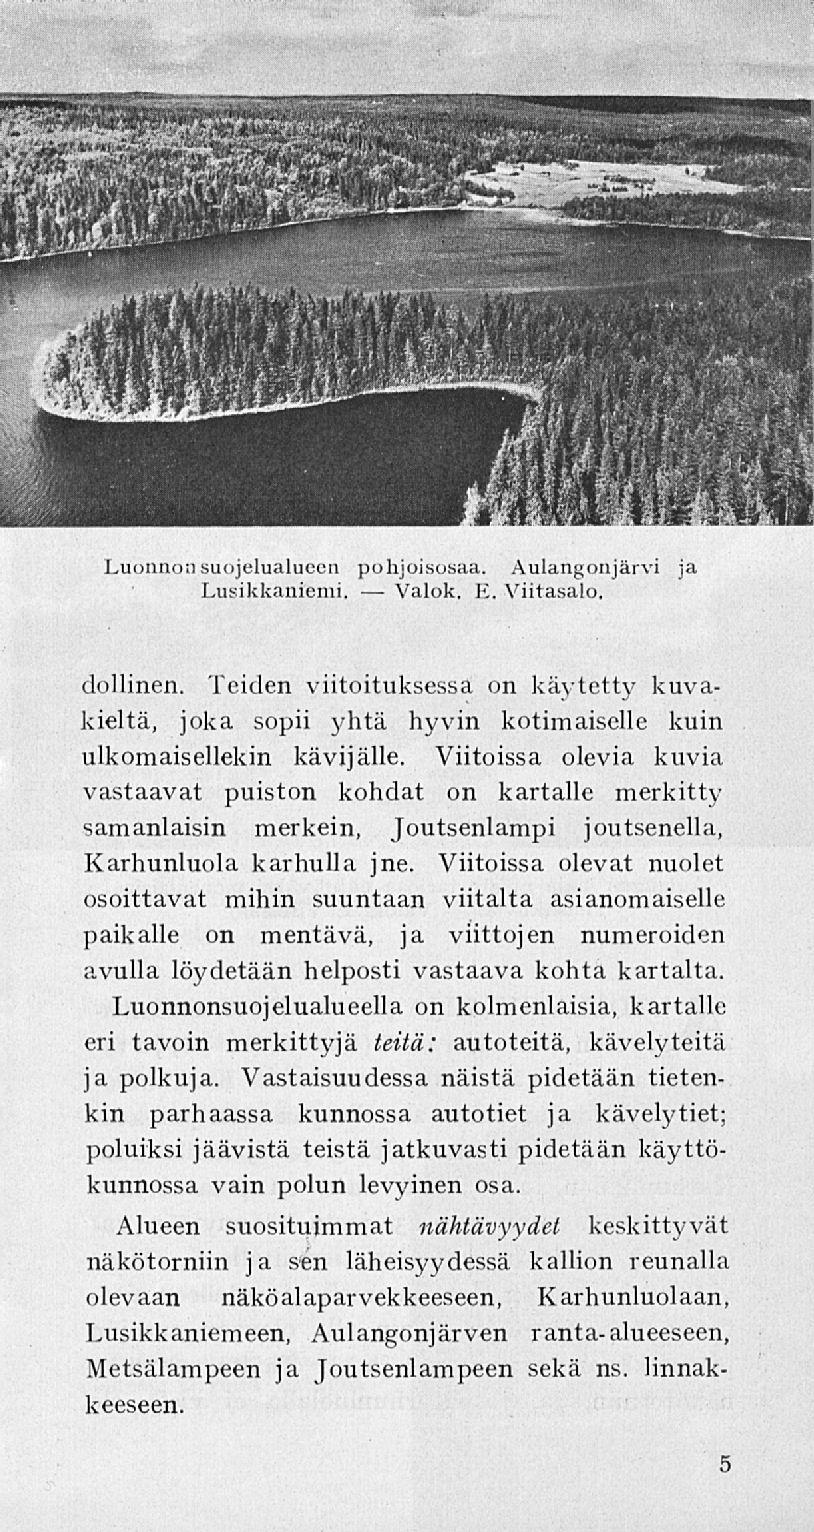 Valok. Luonnonsuojelualueen pohjoisosaa. Aulangonjärvi ja Lusikkaniemi. E. Viitasalo. dollinen.